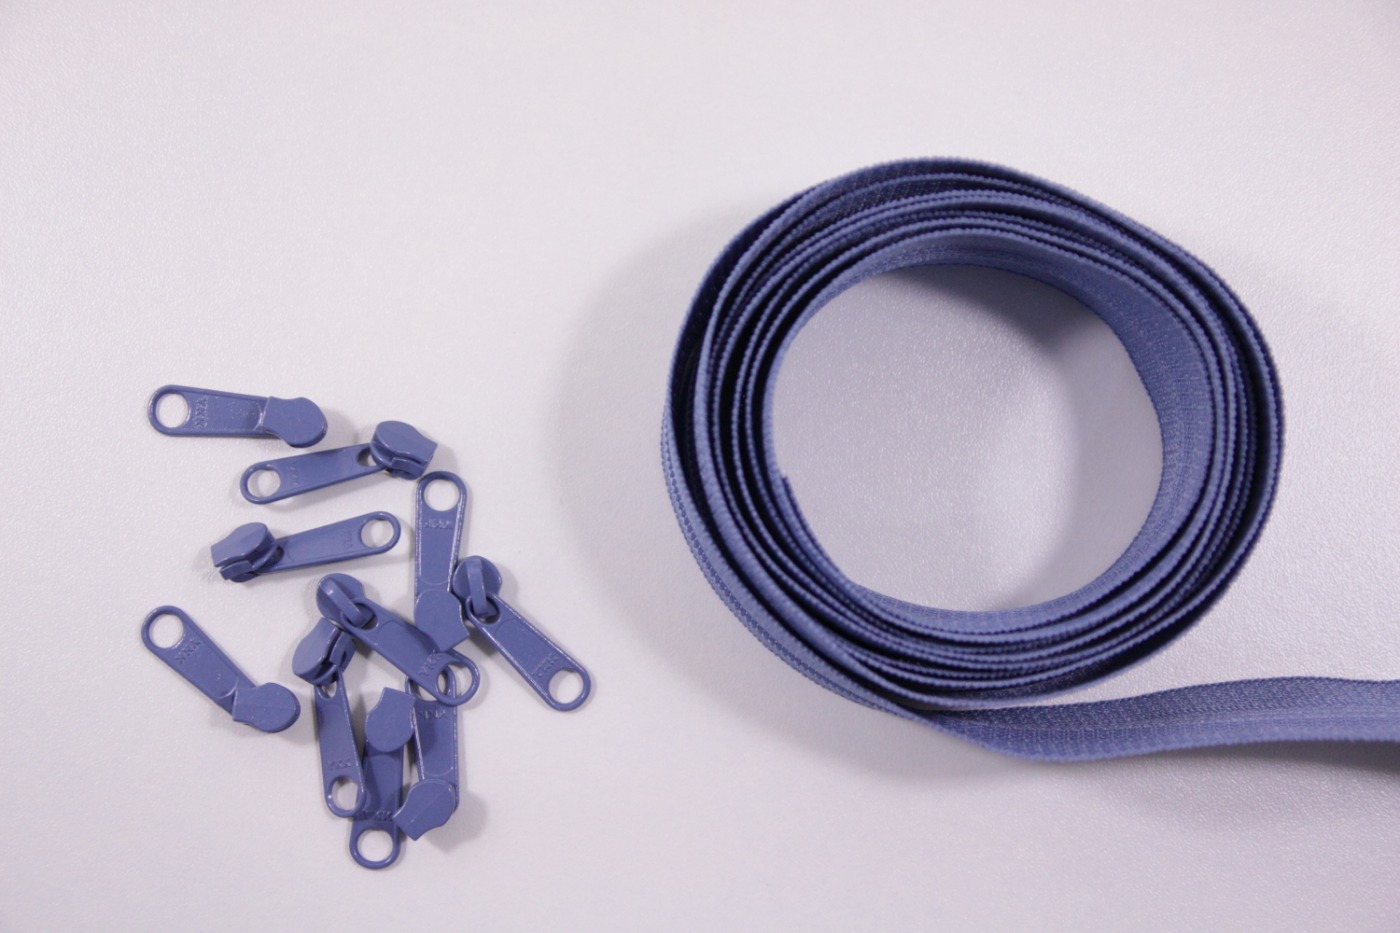 Rits-oud blauw-2 meter lang-10 zippers-Y